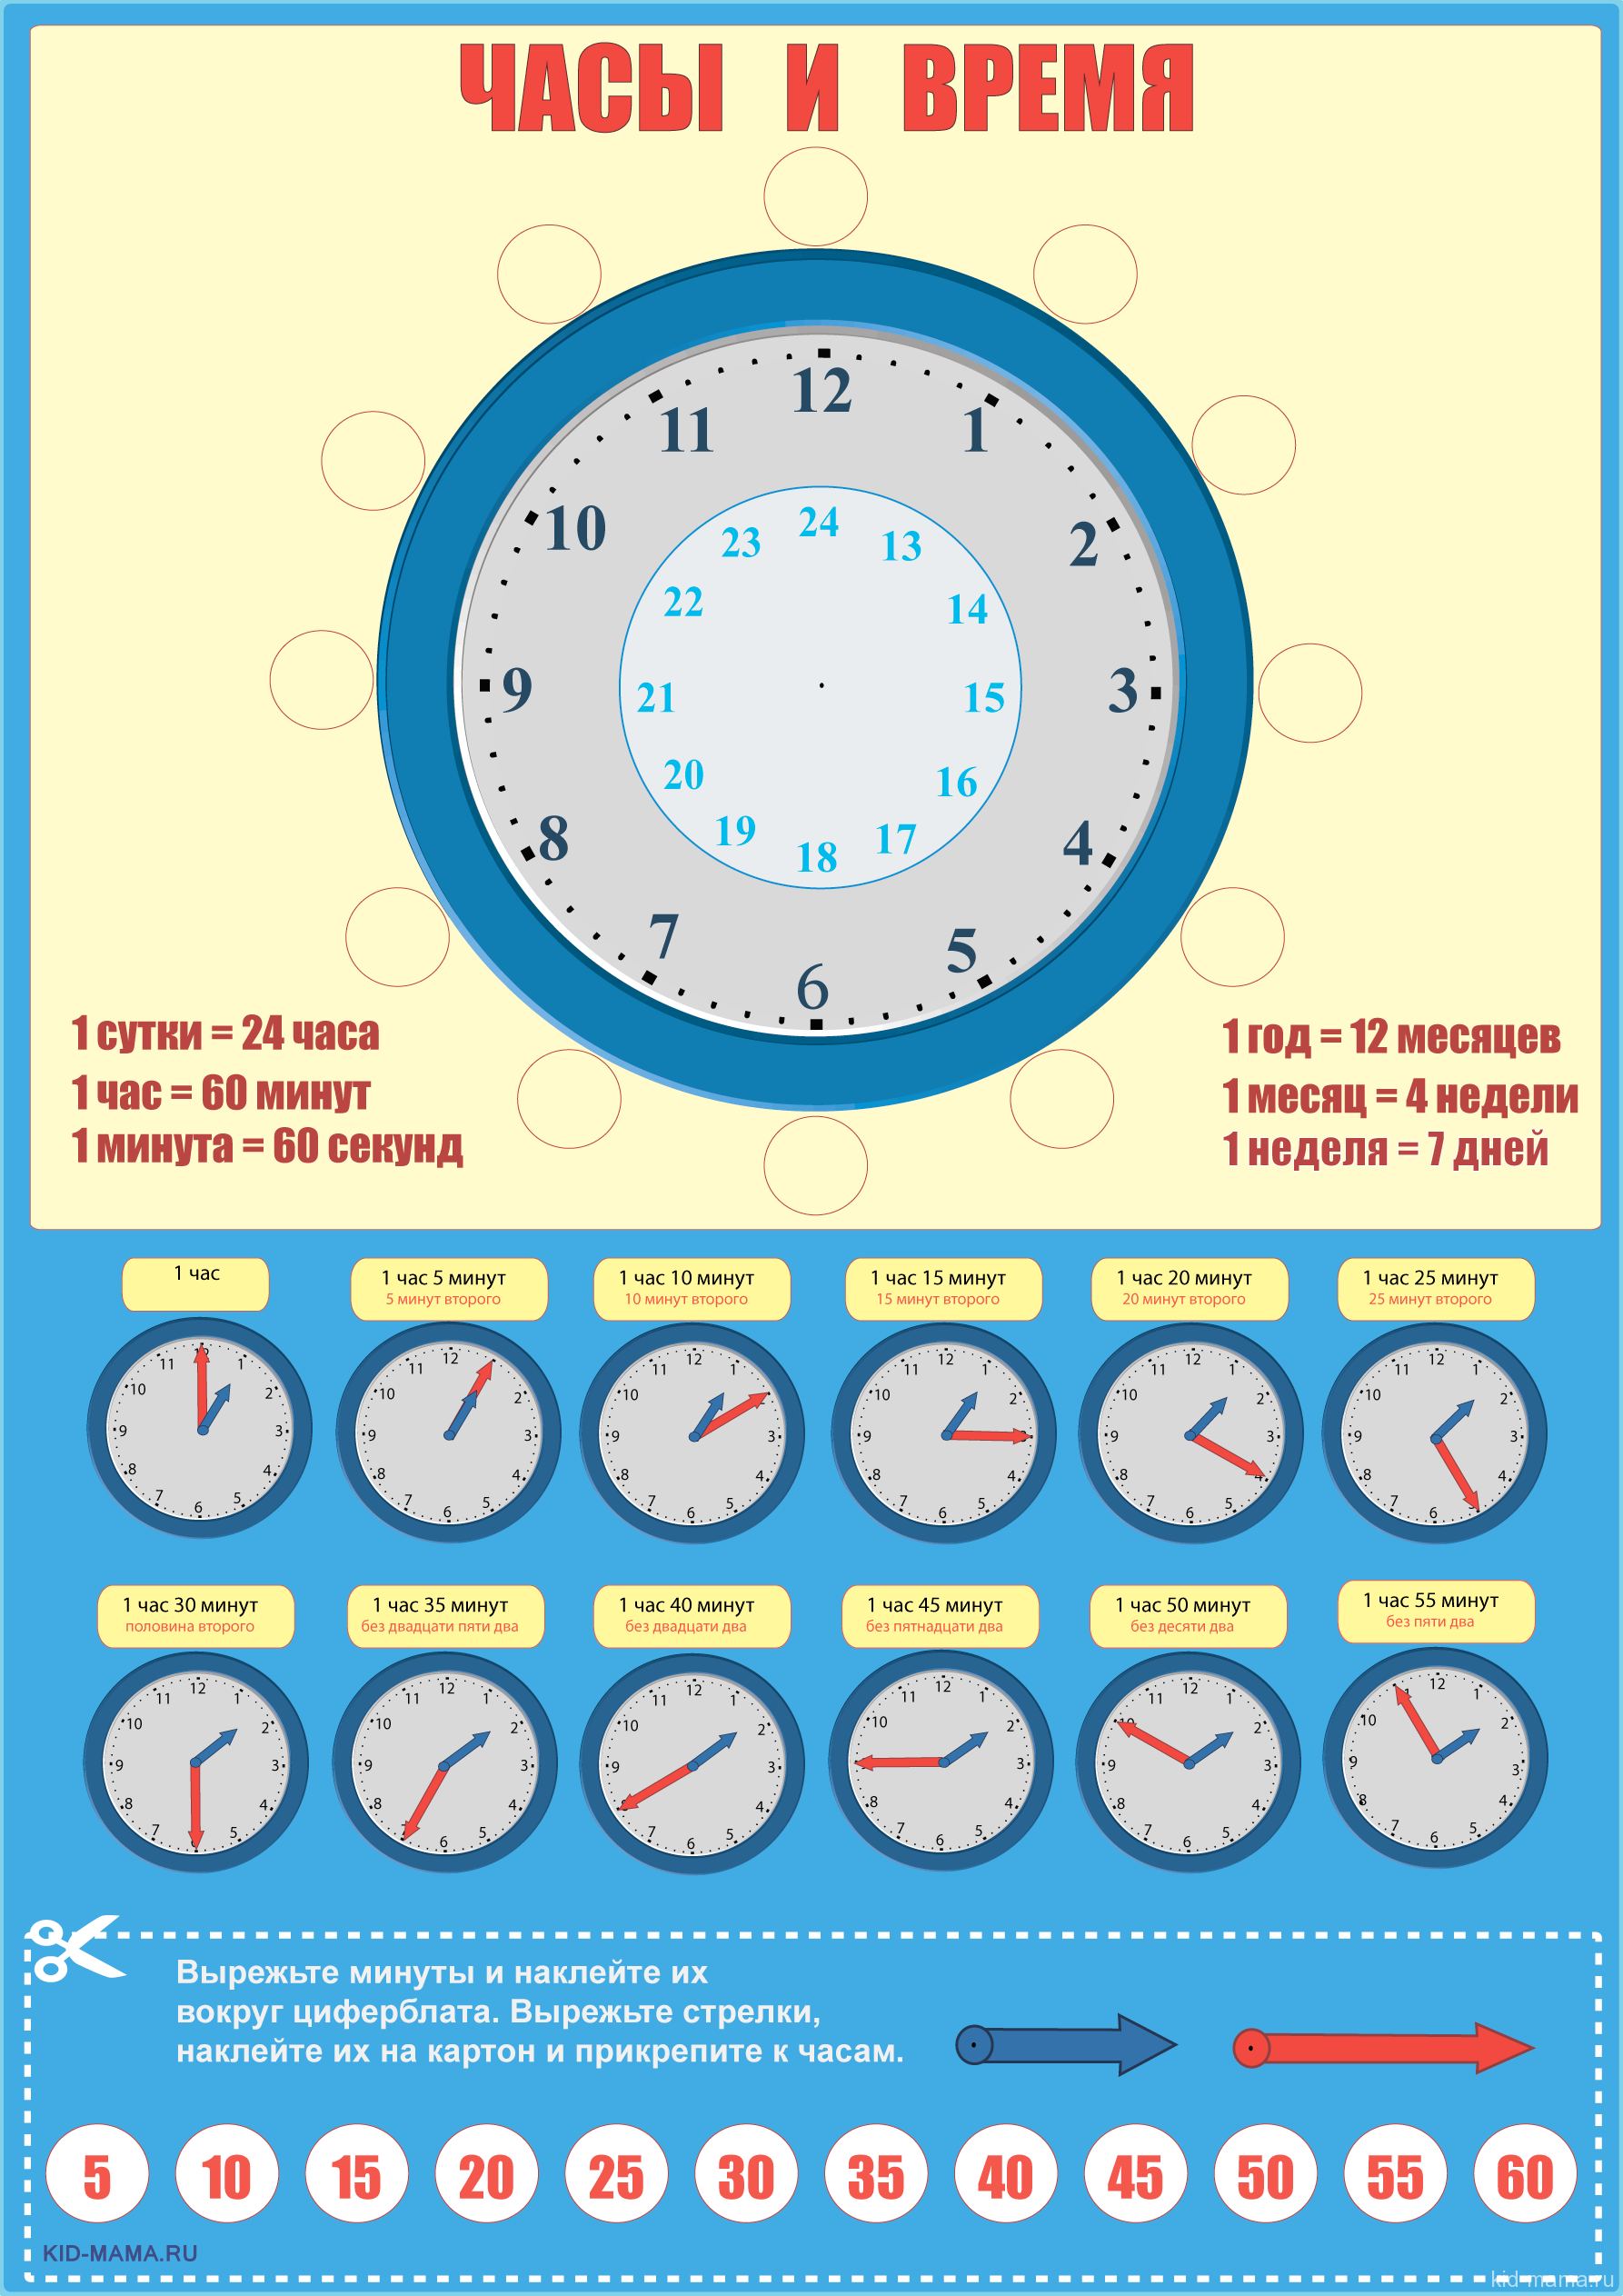 5 минут 2 секунды сколько секунд. Как научить ребёнка распознавать время на часах. Как научить ребёнка понимать по часам со стрелками время. Научить ребенка определять время по часам циферблат.